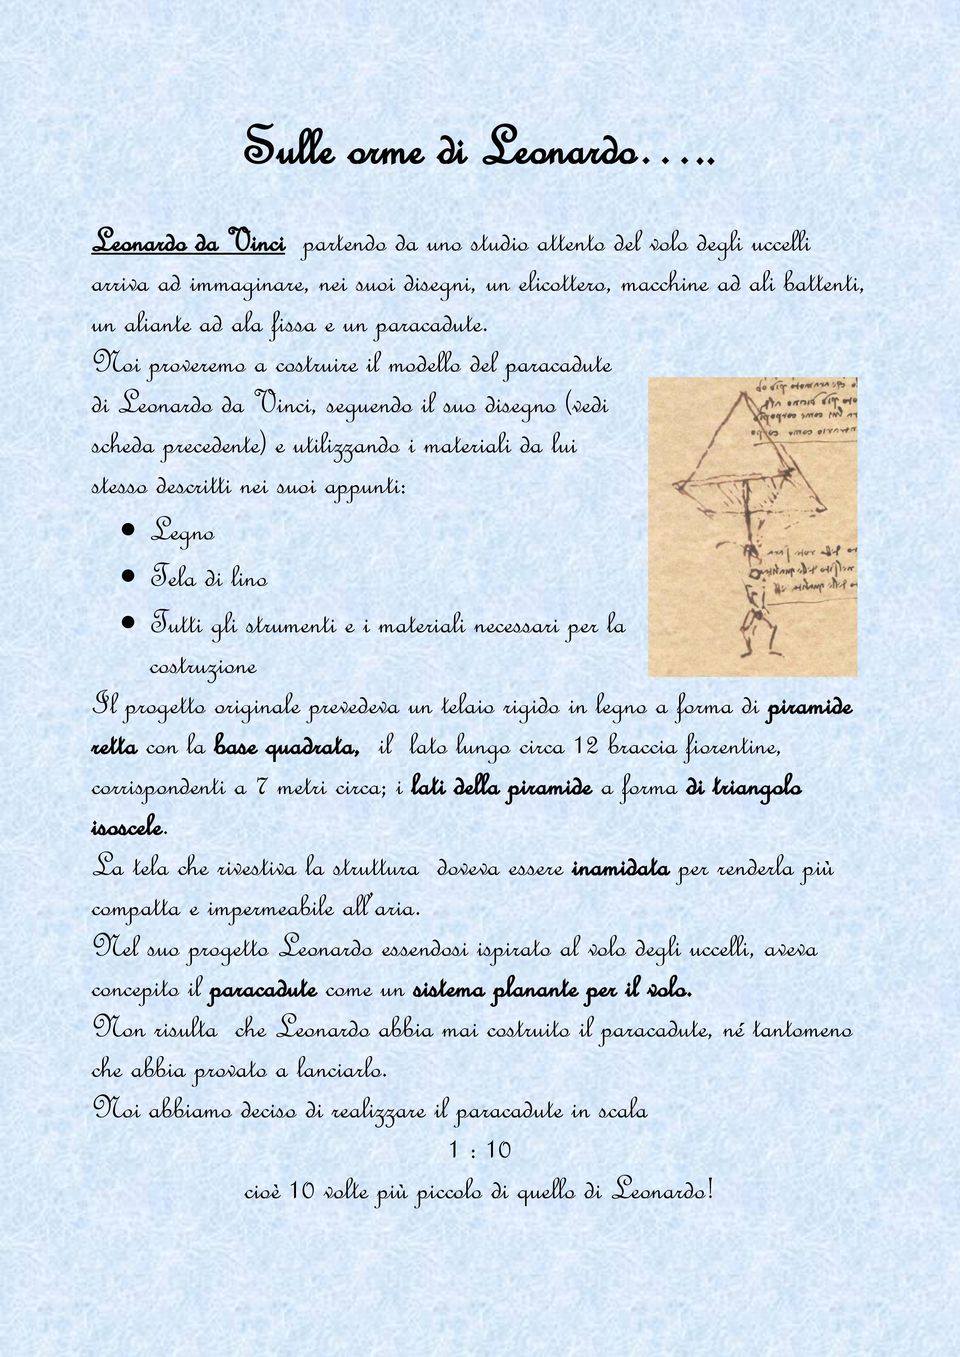 Noi proveremo a costruire il modello del paracadute di Leonardo da Vinci, seguendo il suo disegno (vedi scheda precedente) e utilizzando i materiali da lui stesso descritti nei suoi appunti: Legno